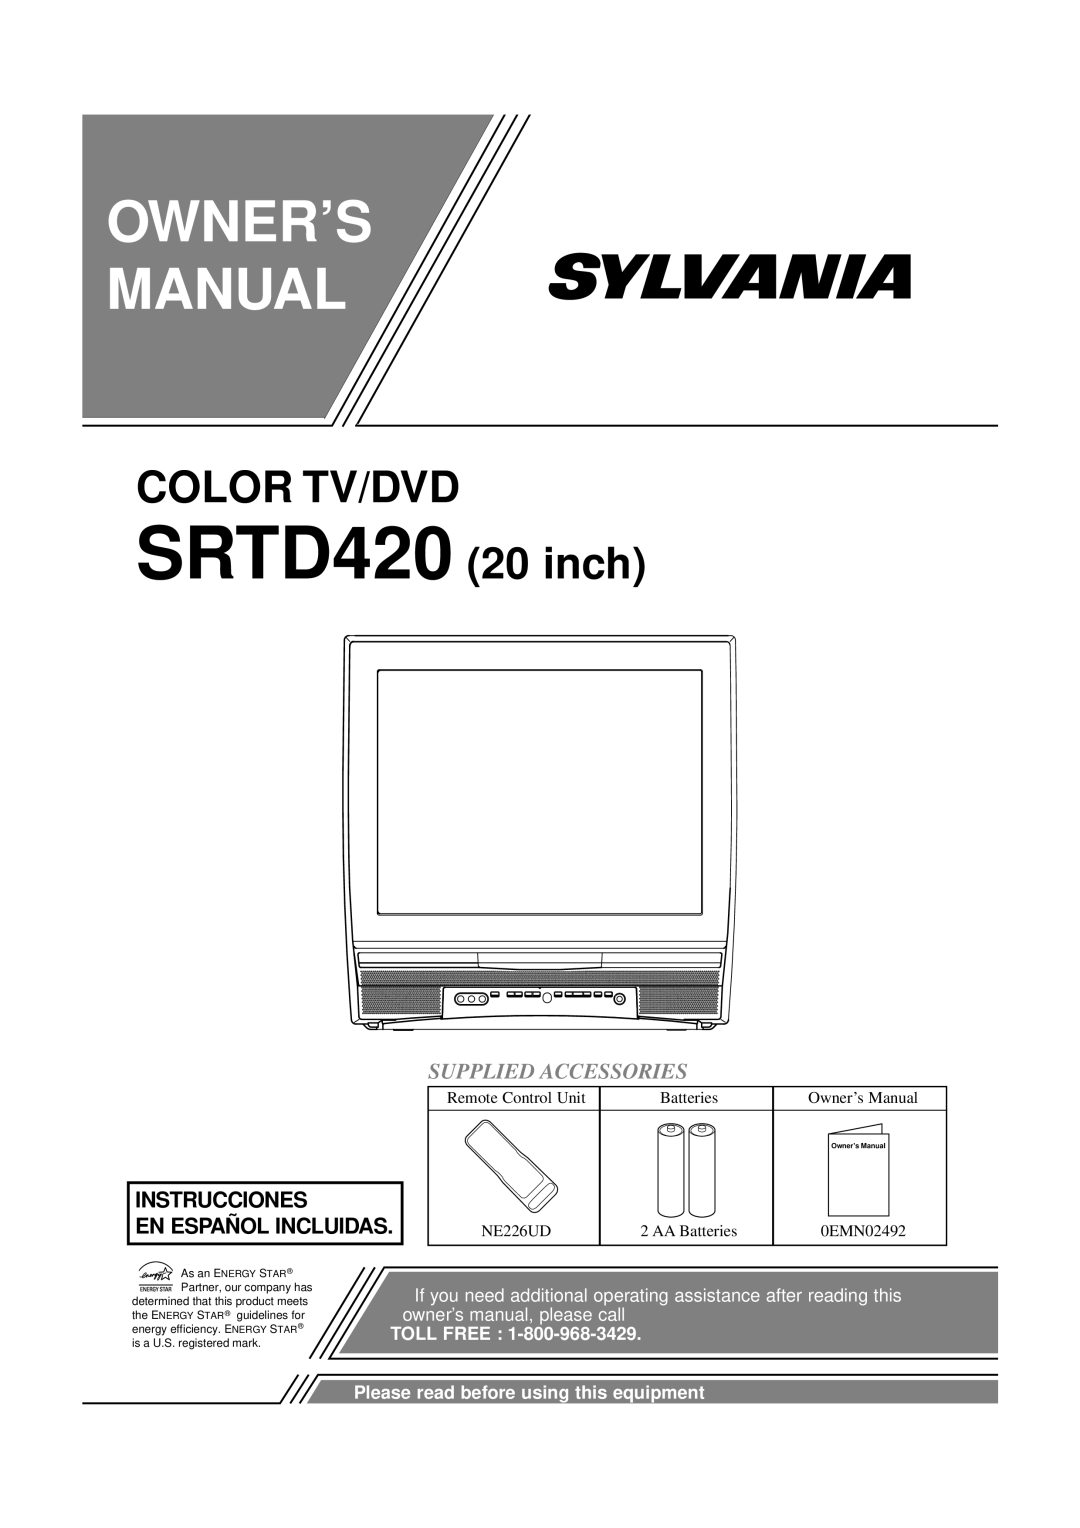 Sylvania SRTD420 owner manual Supplied Accessories, Instrucciones En Español Incluidas, Owner’S Manual, Toll Free 